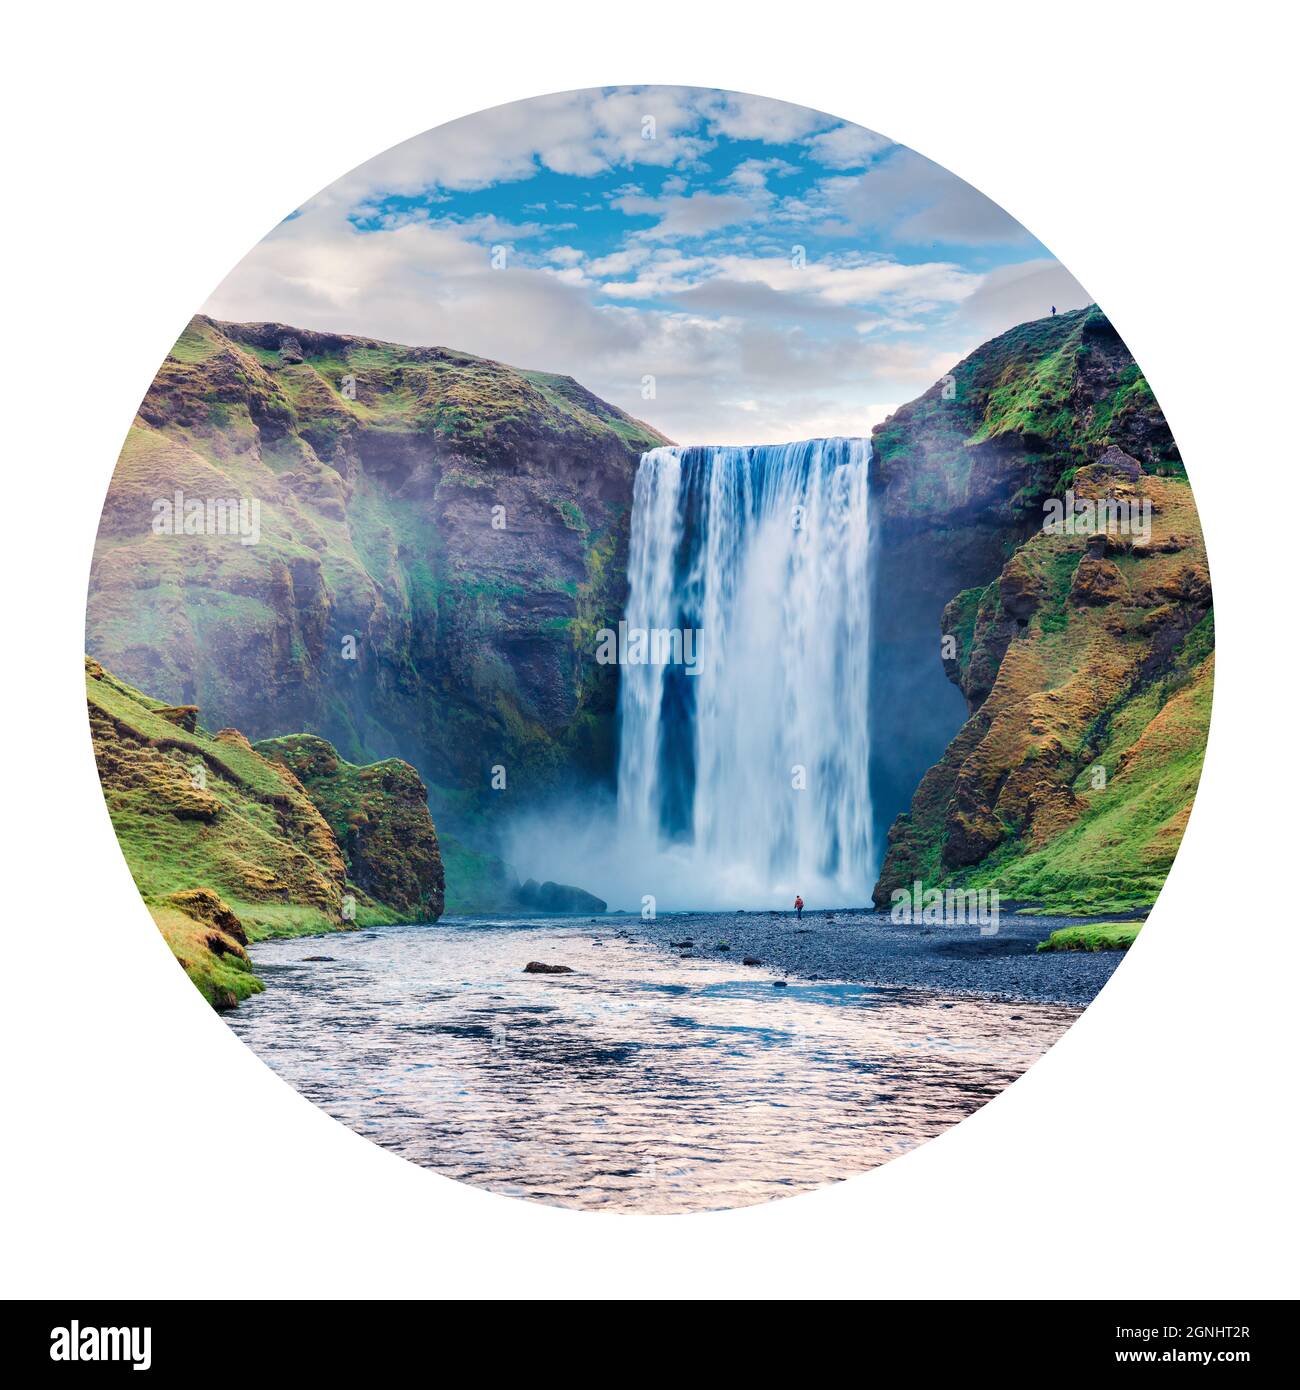 Runde Ikone der Natur mit Landschaft. Wunderschöne Sommeransicht des Skogafoss Wasserfalls auf dem Skoga Fluss, Island, Europa. Fotografie im Kreis. Stockfoto